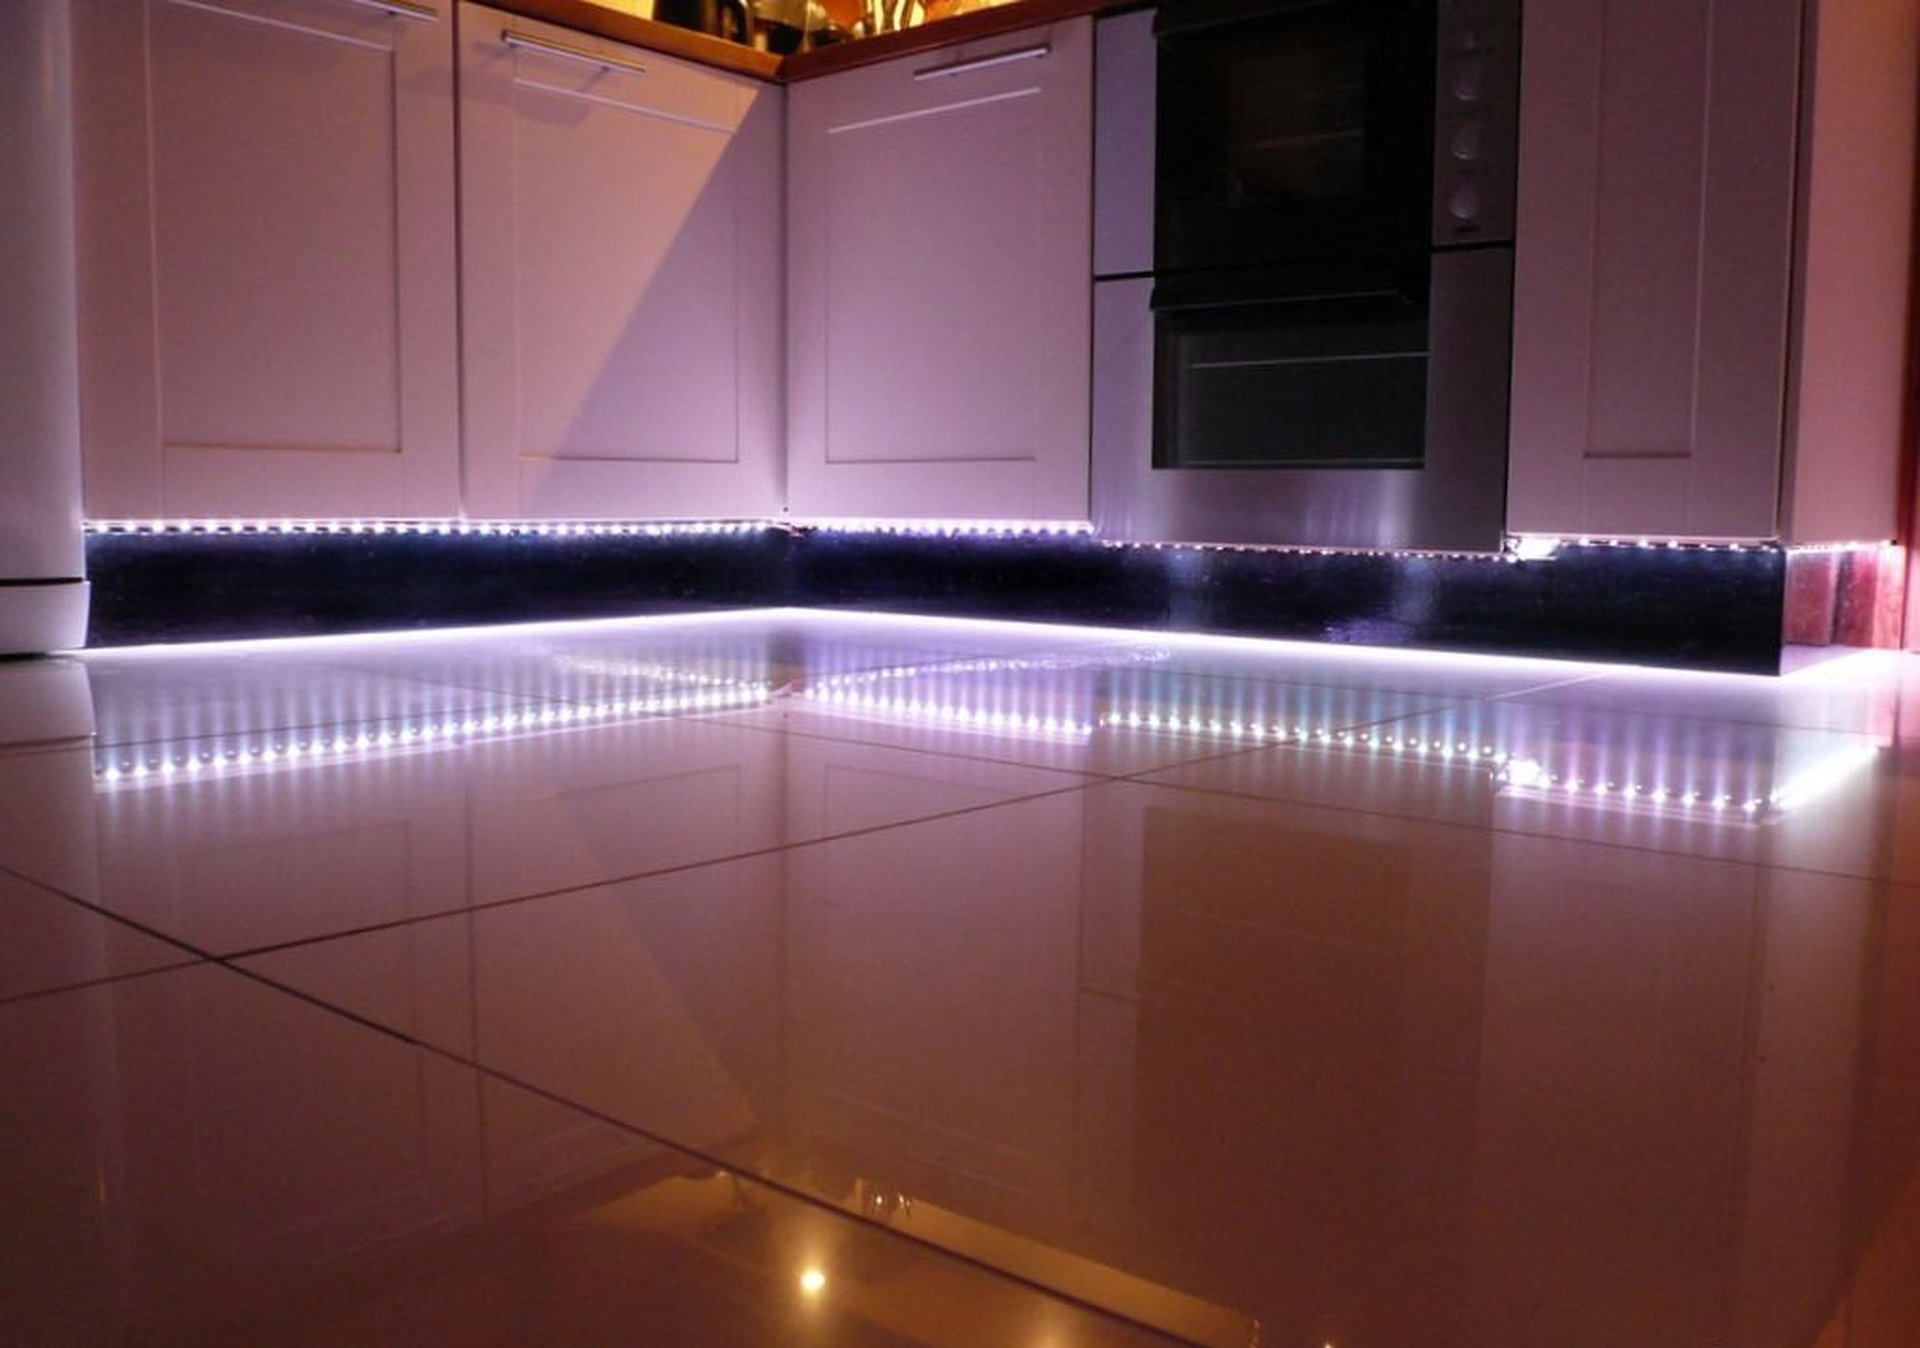 Светодиод лед подсветки. Подсветка для кухни. Светодиодная Лена на кухню. Подсветка кухни светодиодной лентой.